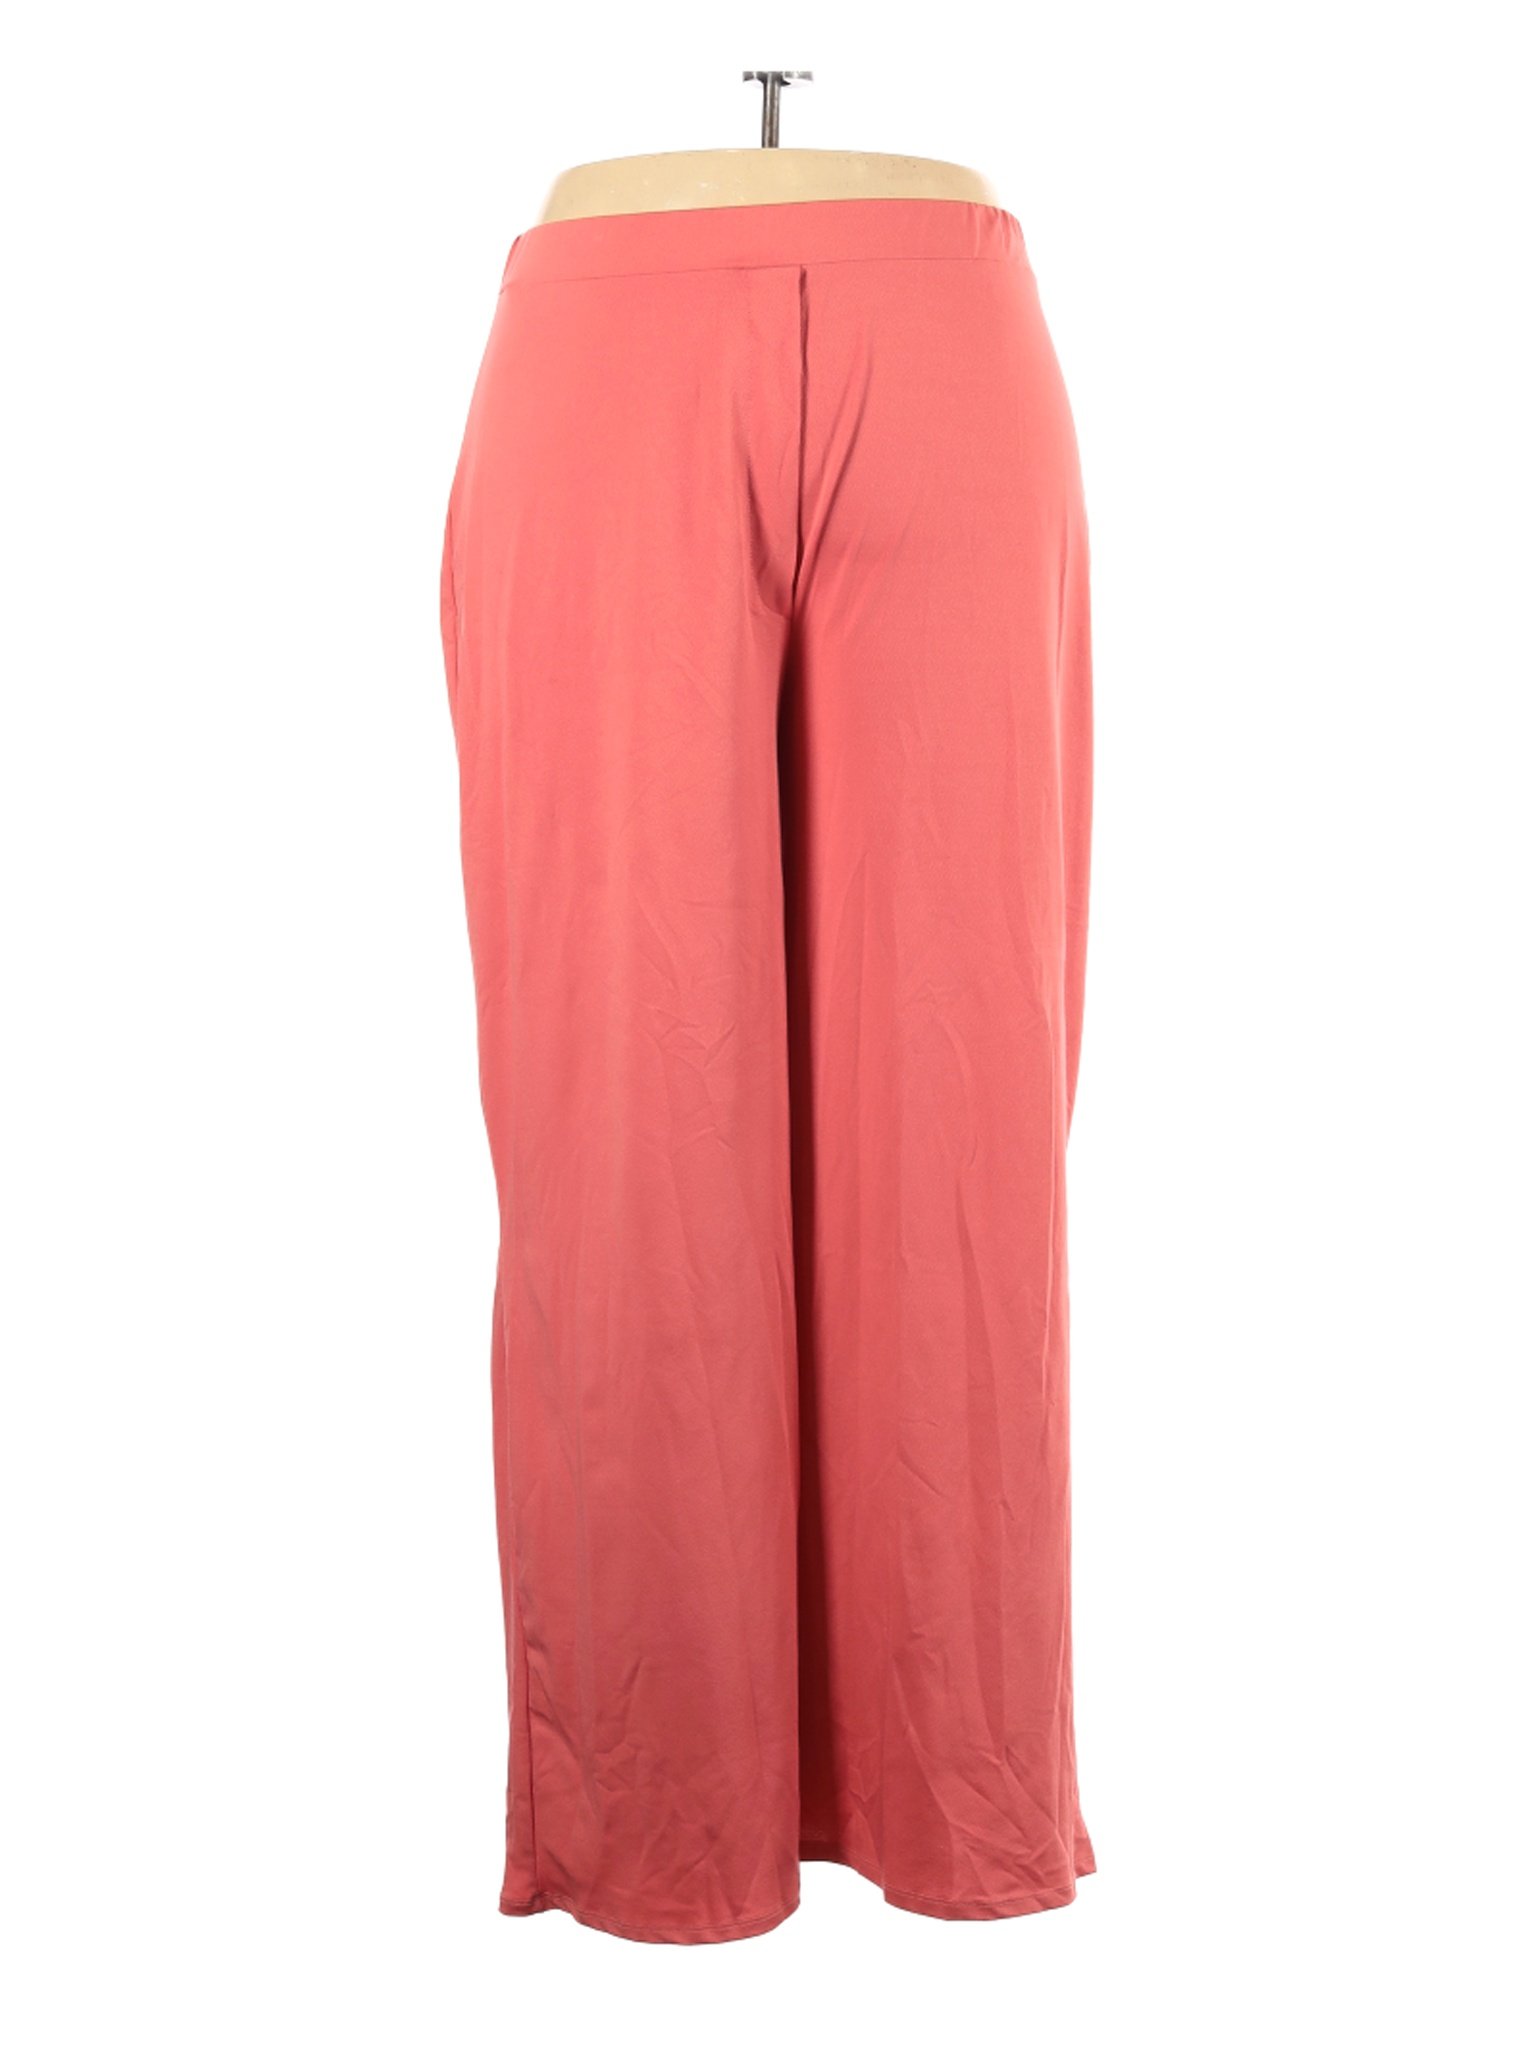 Unique21 Women Pink Casual Pants 20 Plus | eBay